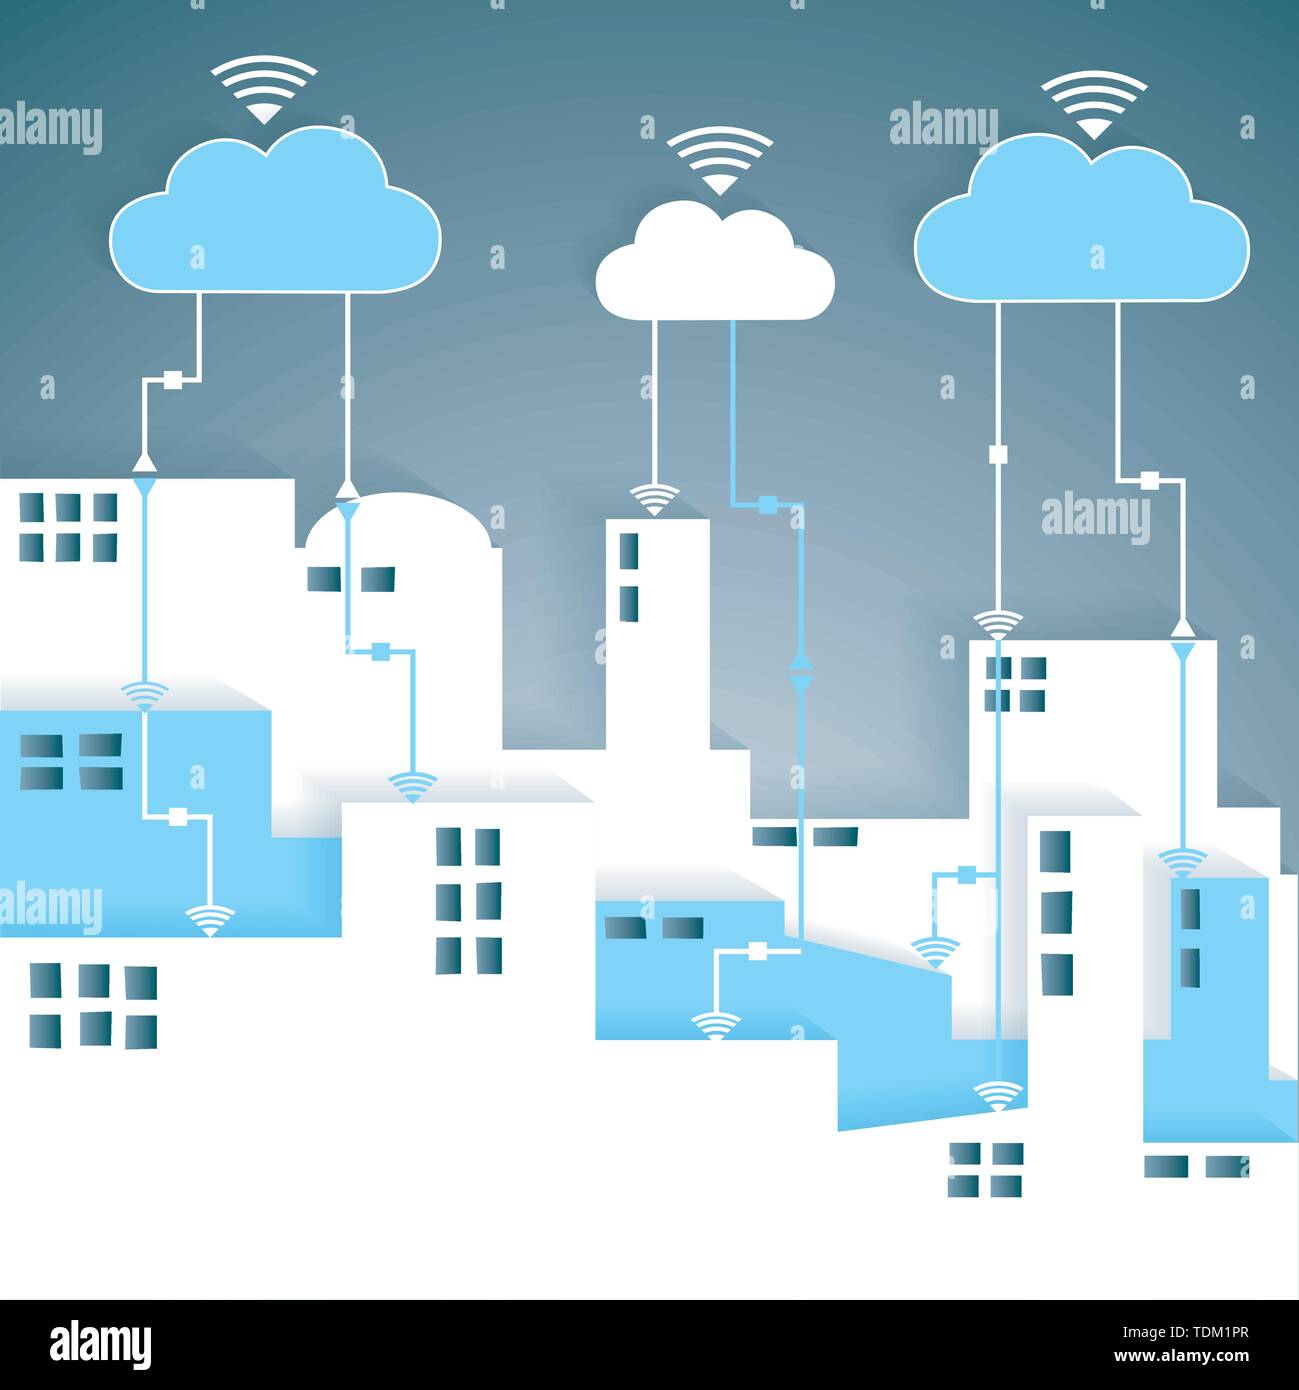 La connectivité Cloud Computing découpe papier City Network - Réseau concept de connectivité Internet, EPS10 regroupés et stratifiés Illustration de Vecteur